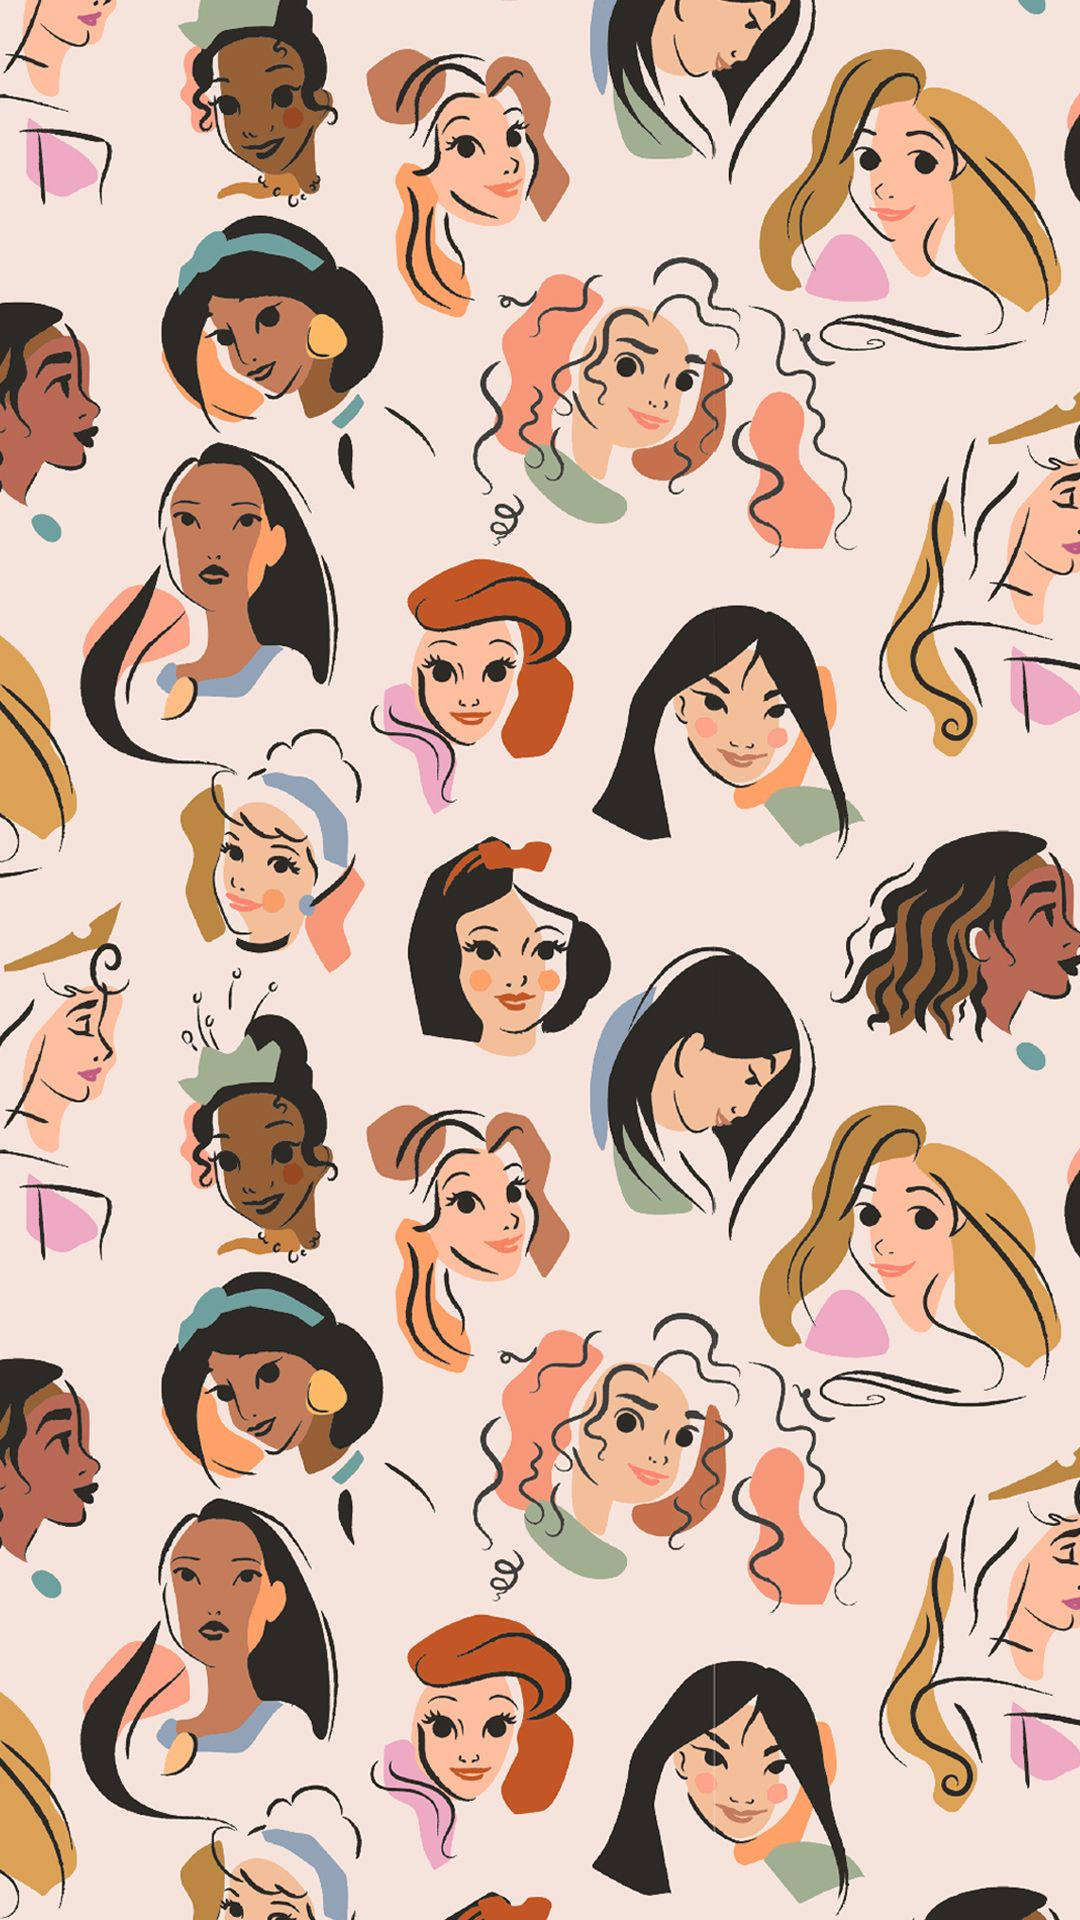 Enklassisk Disney-prinsessa Med En Modern Touch! Wallpaper